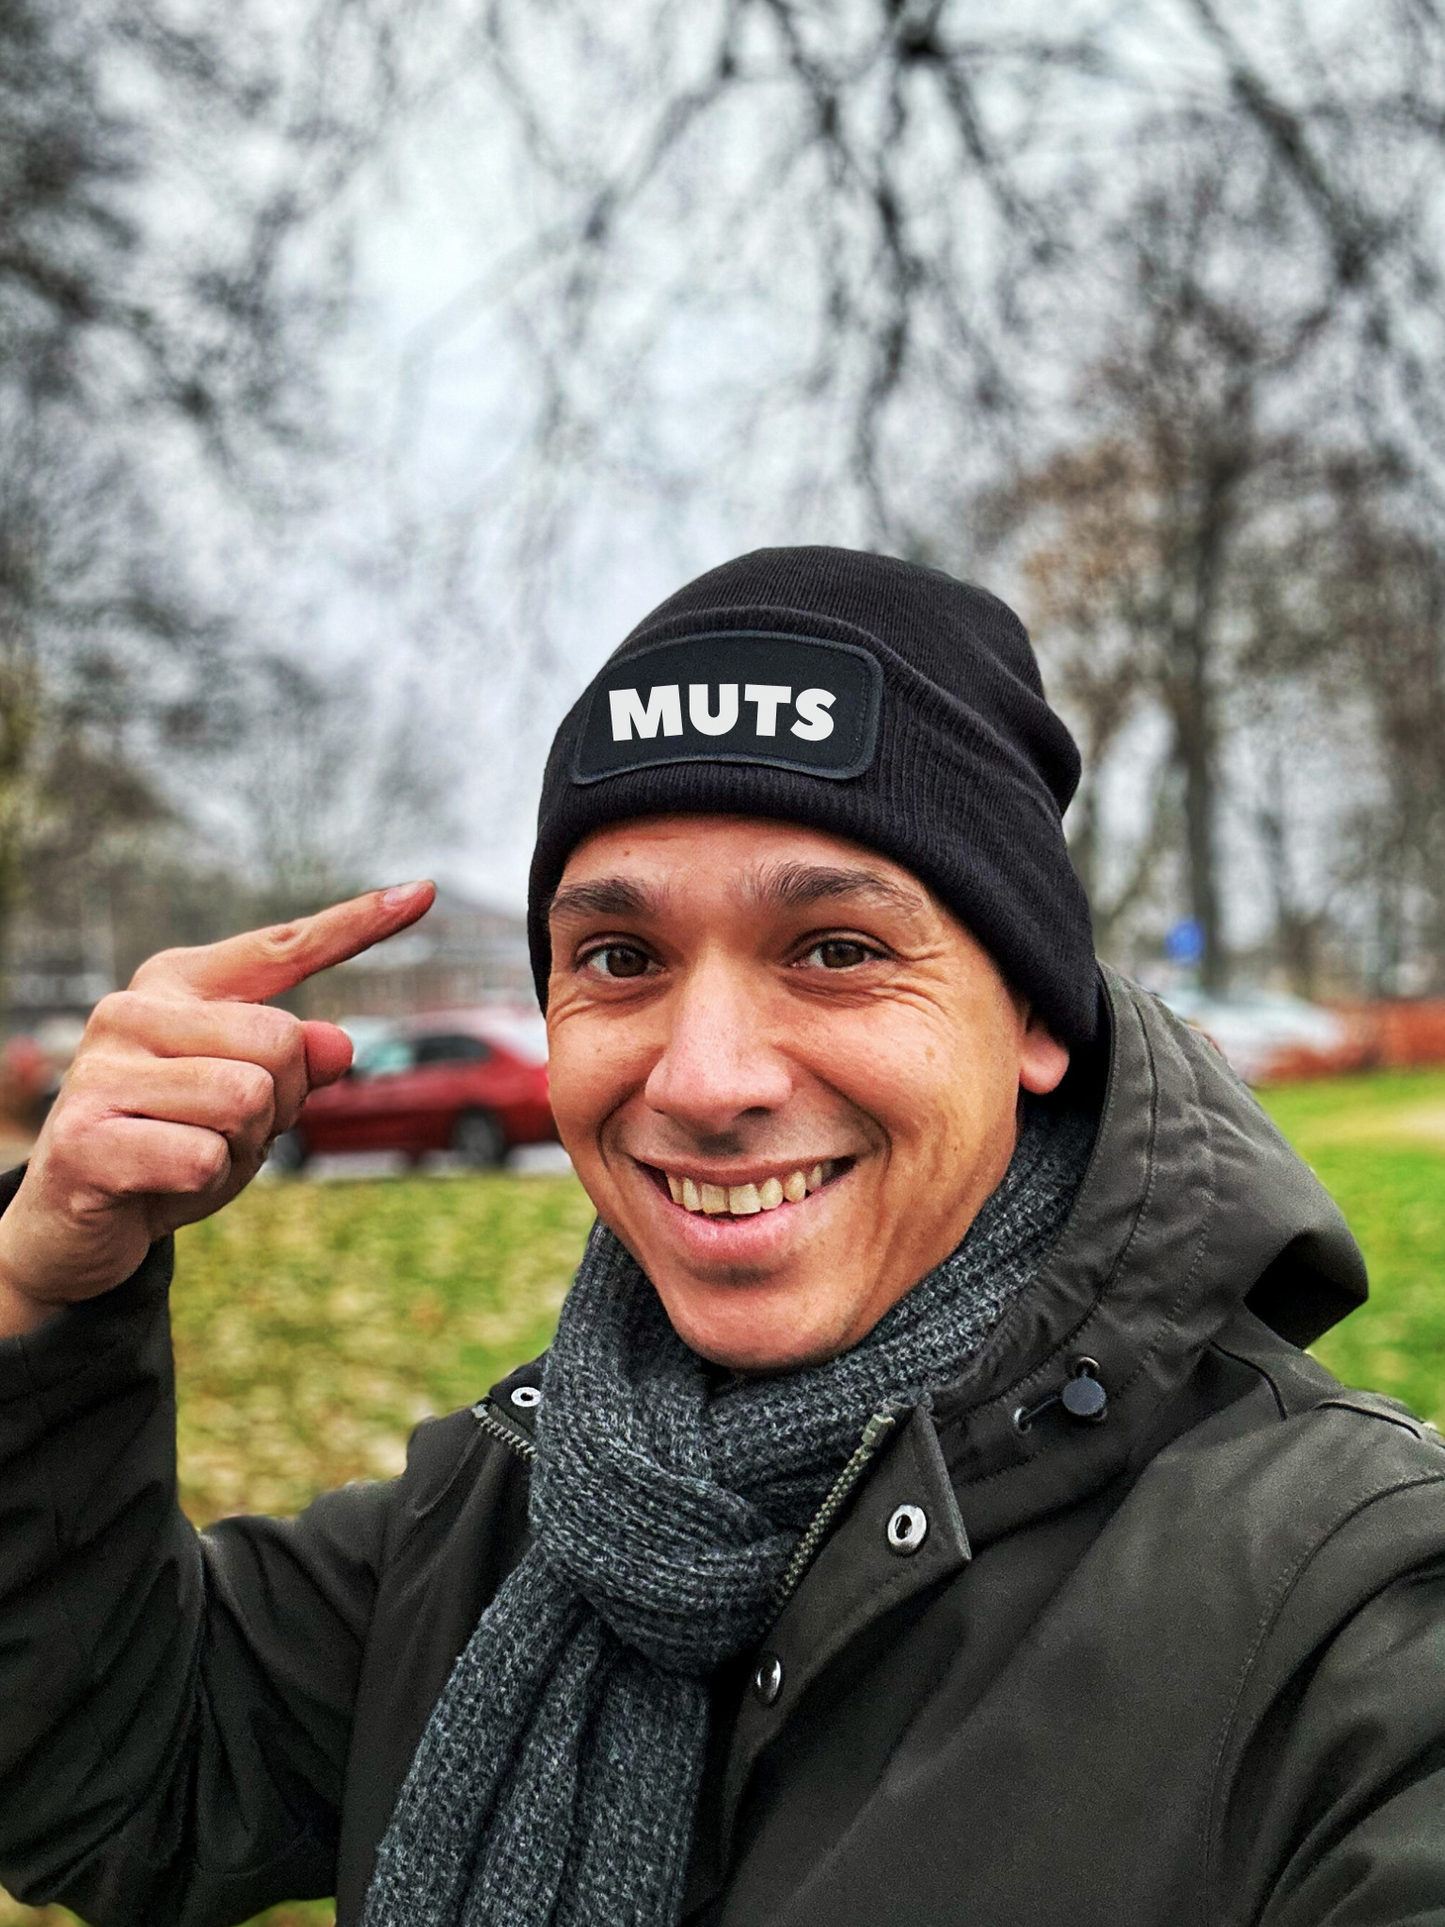 Winter muts ‘MUTS’